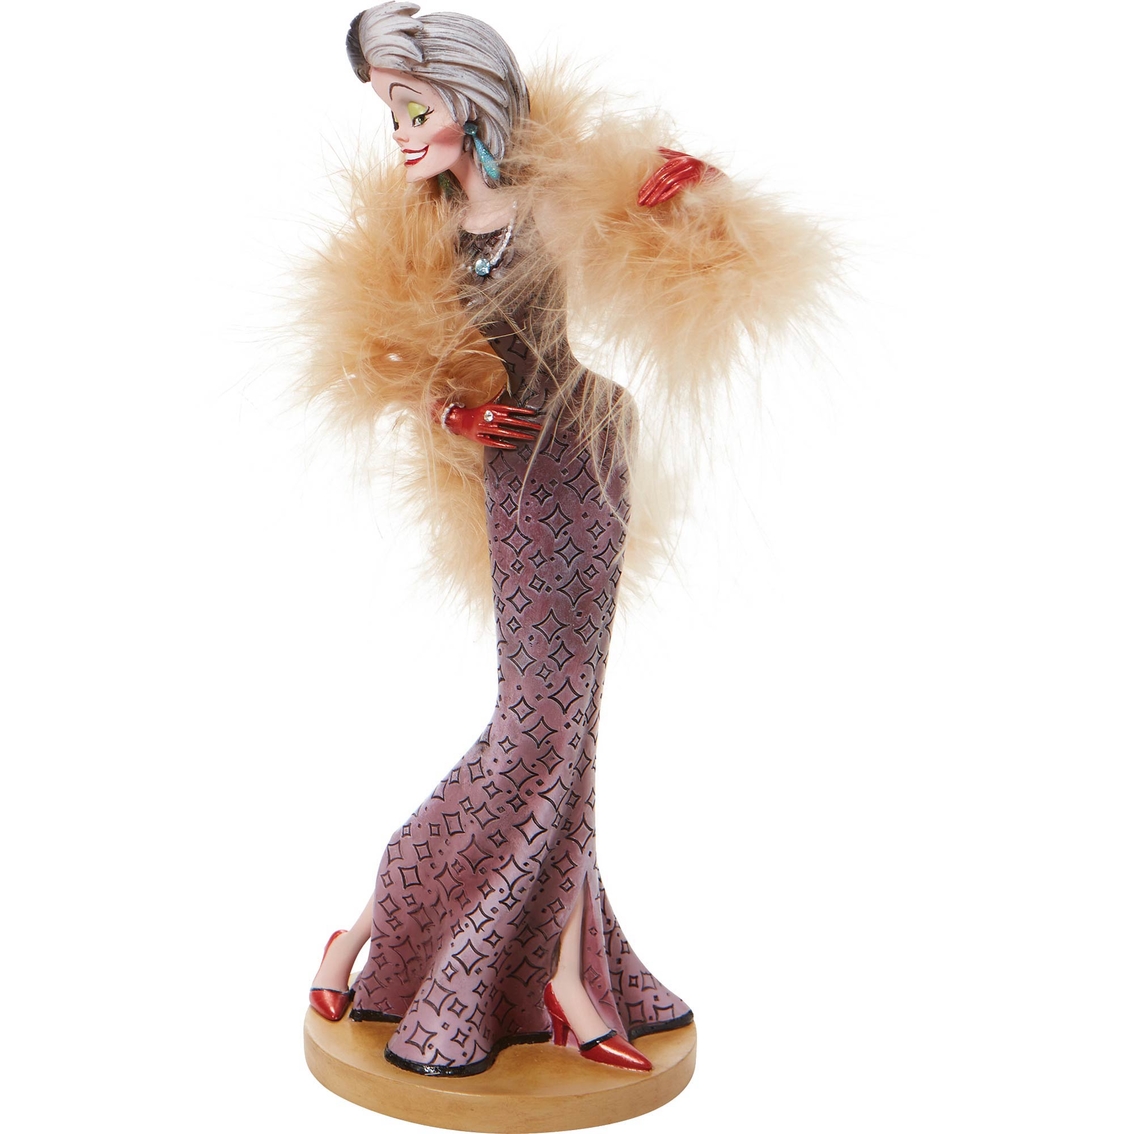 Disney Showcase Couture de Force Cruella Figurine - Image 4 of 5